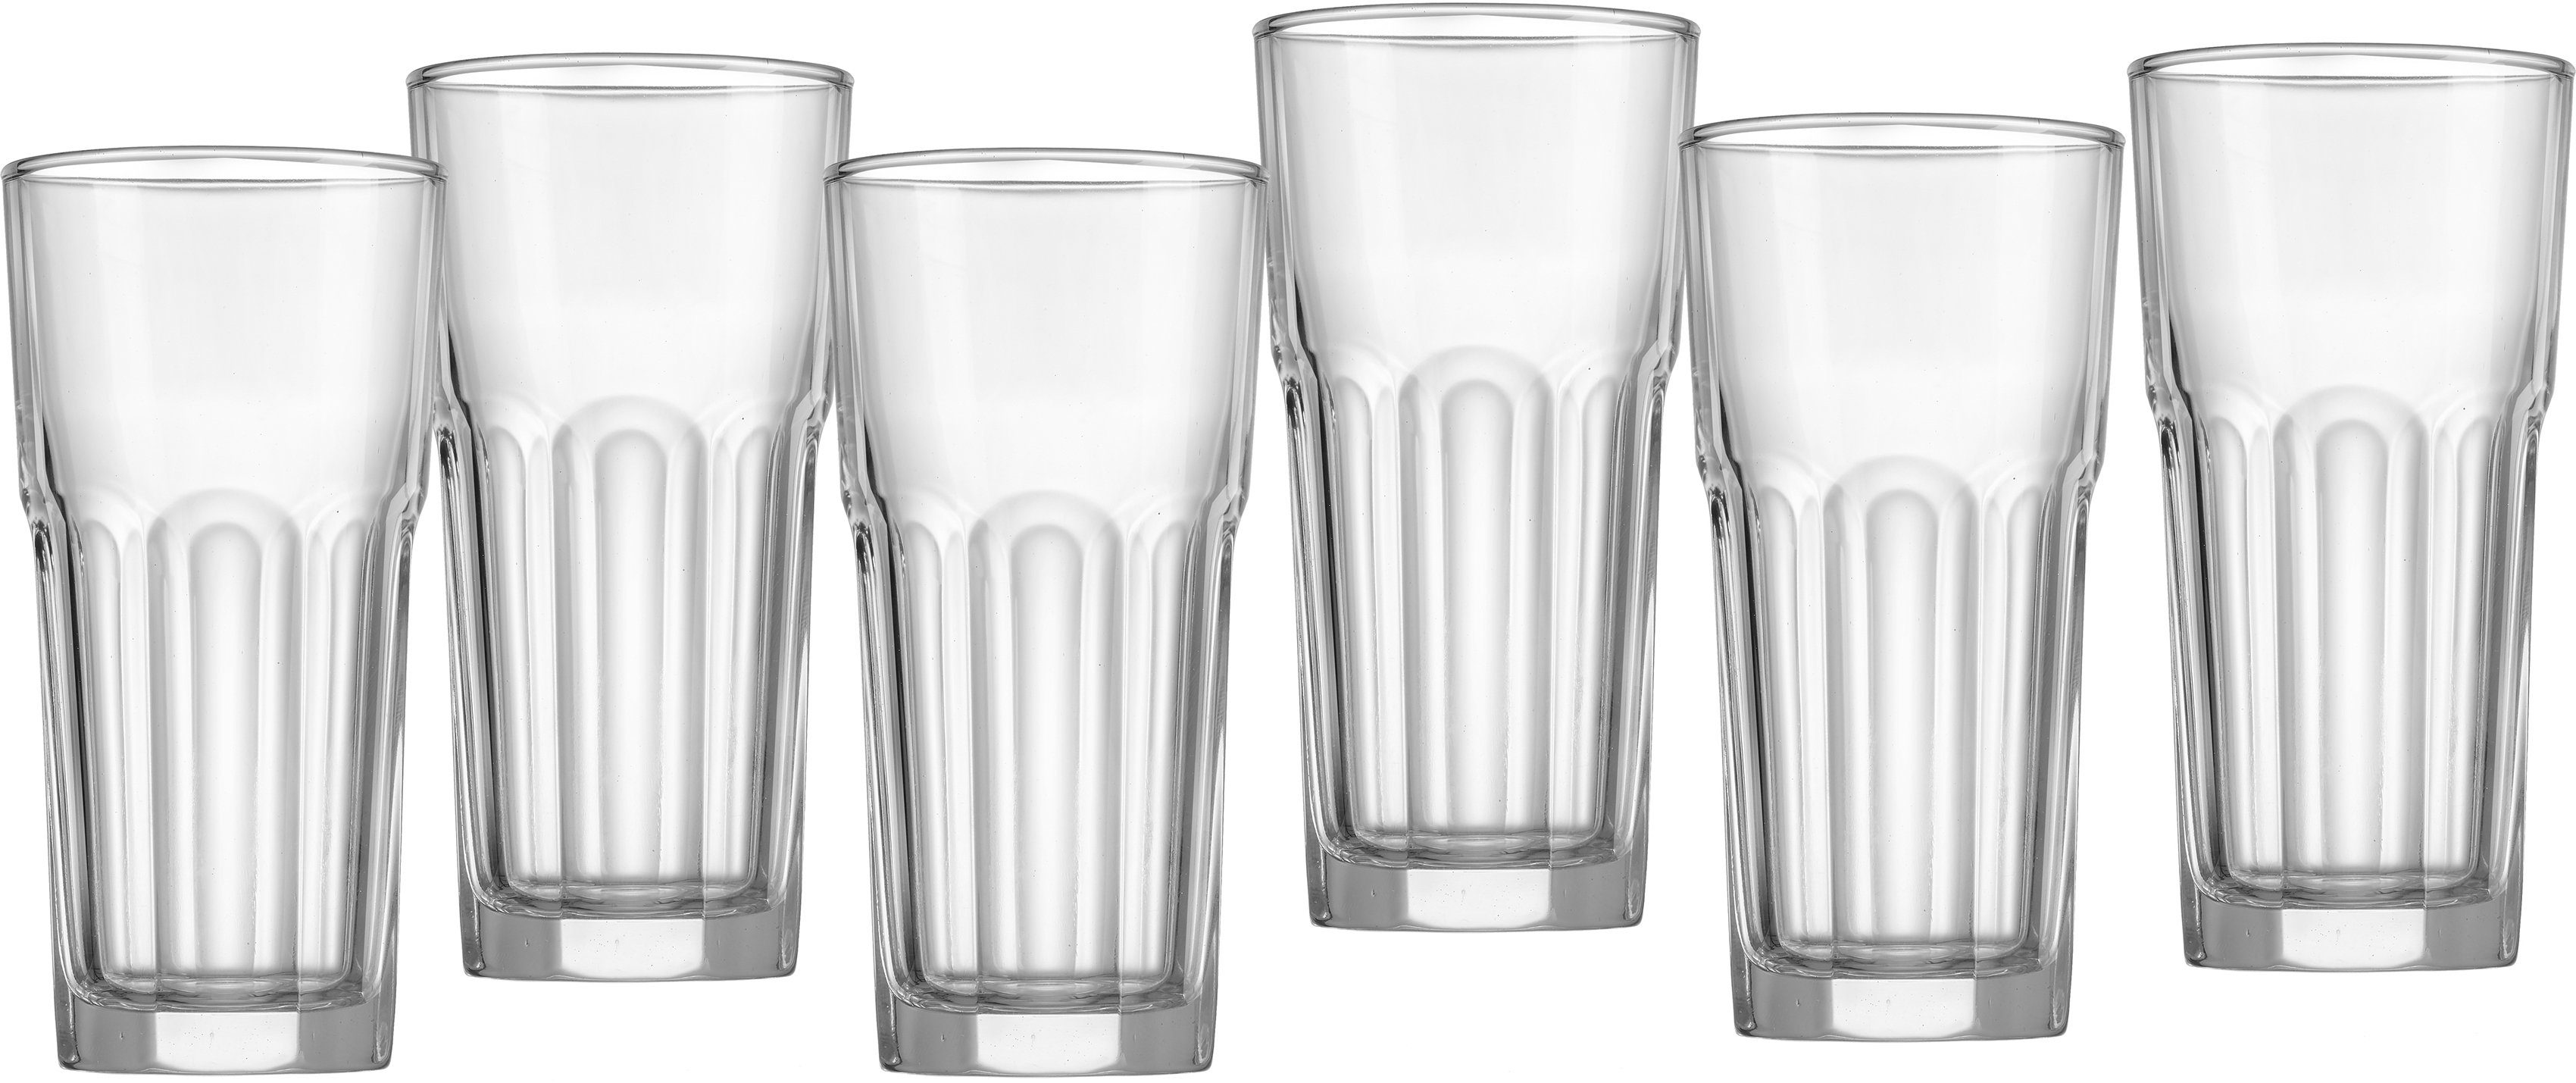 Ritzenhoff & Breker Gläser-Set »Riad«, Glas, Facetten-Optik, 6-teilig  online kaufen | OTTO